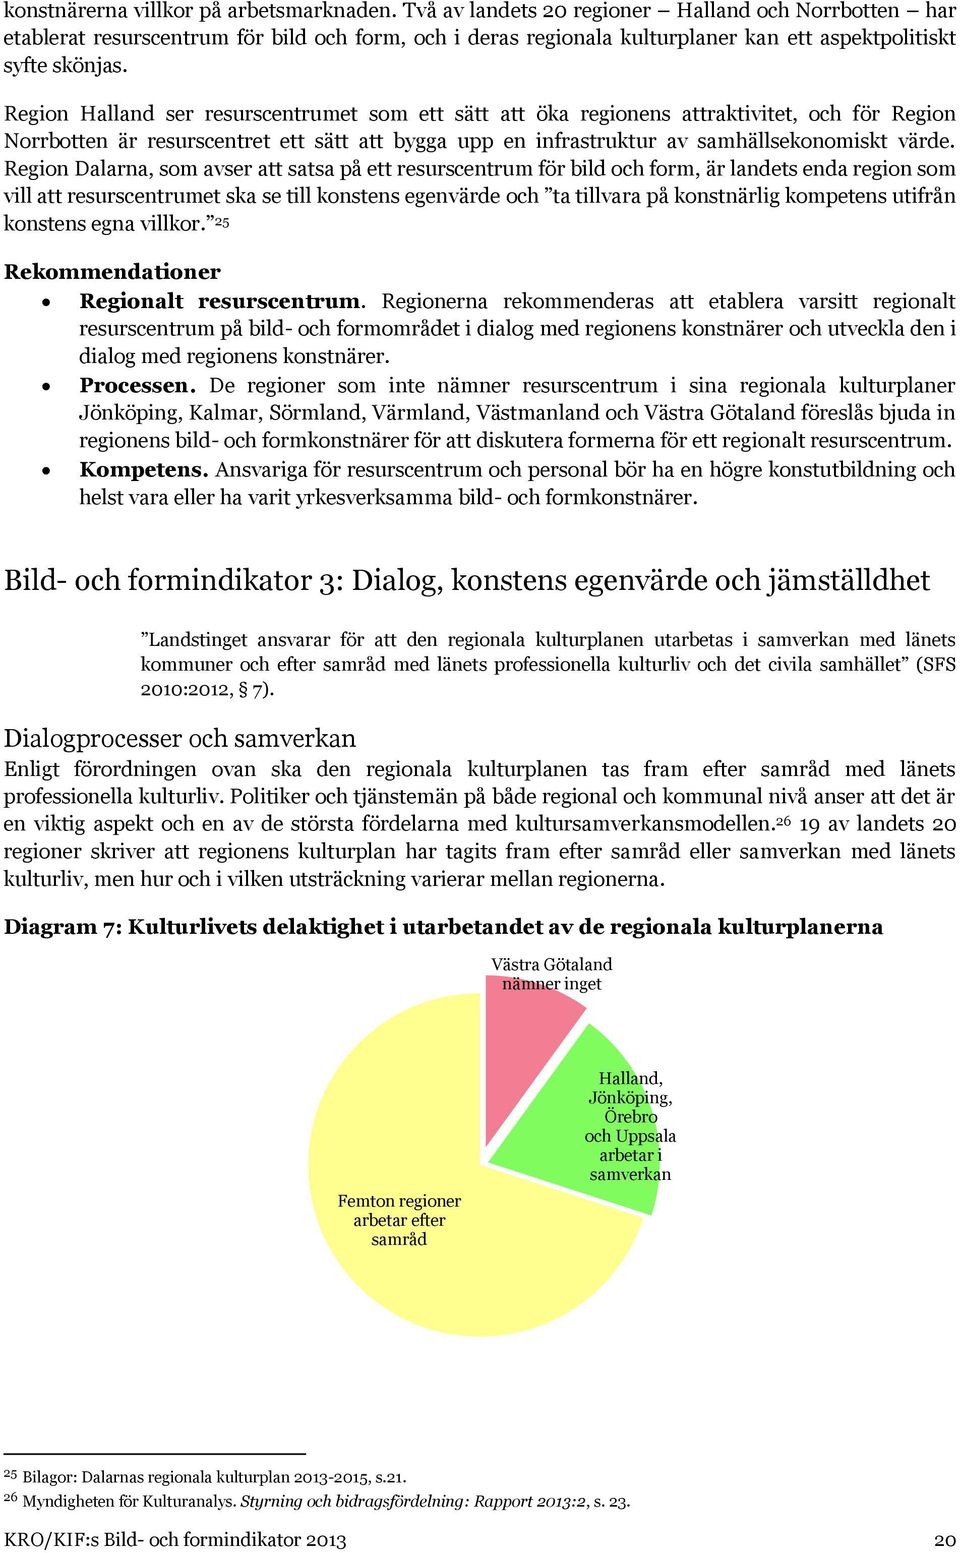 Region Halland ser resurscentrumet som ett sätt att öka regionens attraktivitet, och för Region Norrbotten är resurscentret ett sätt att bygga upp en infrastruktur av samhällsekonomiskt värde.